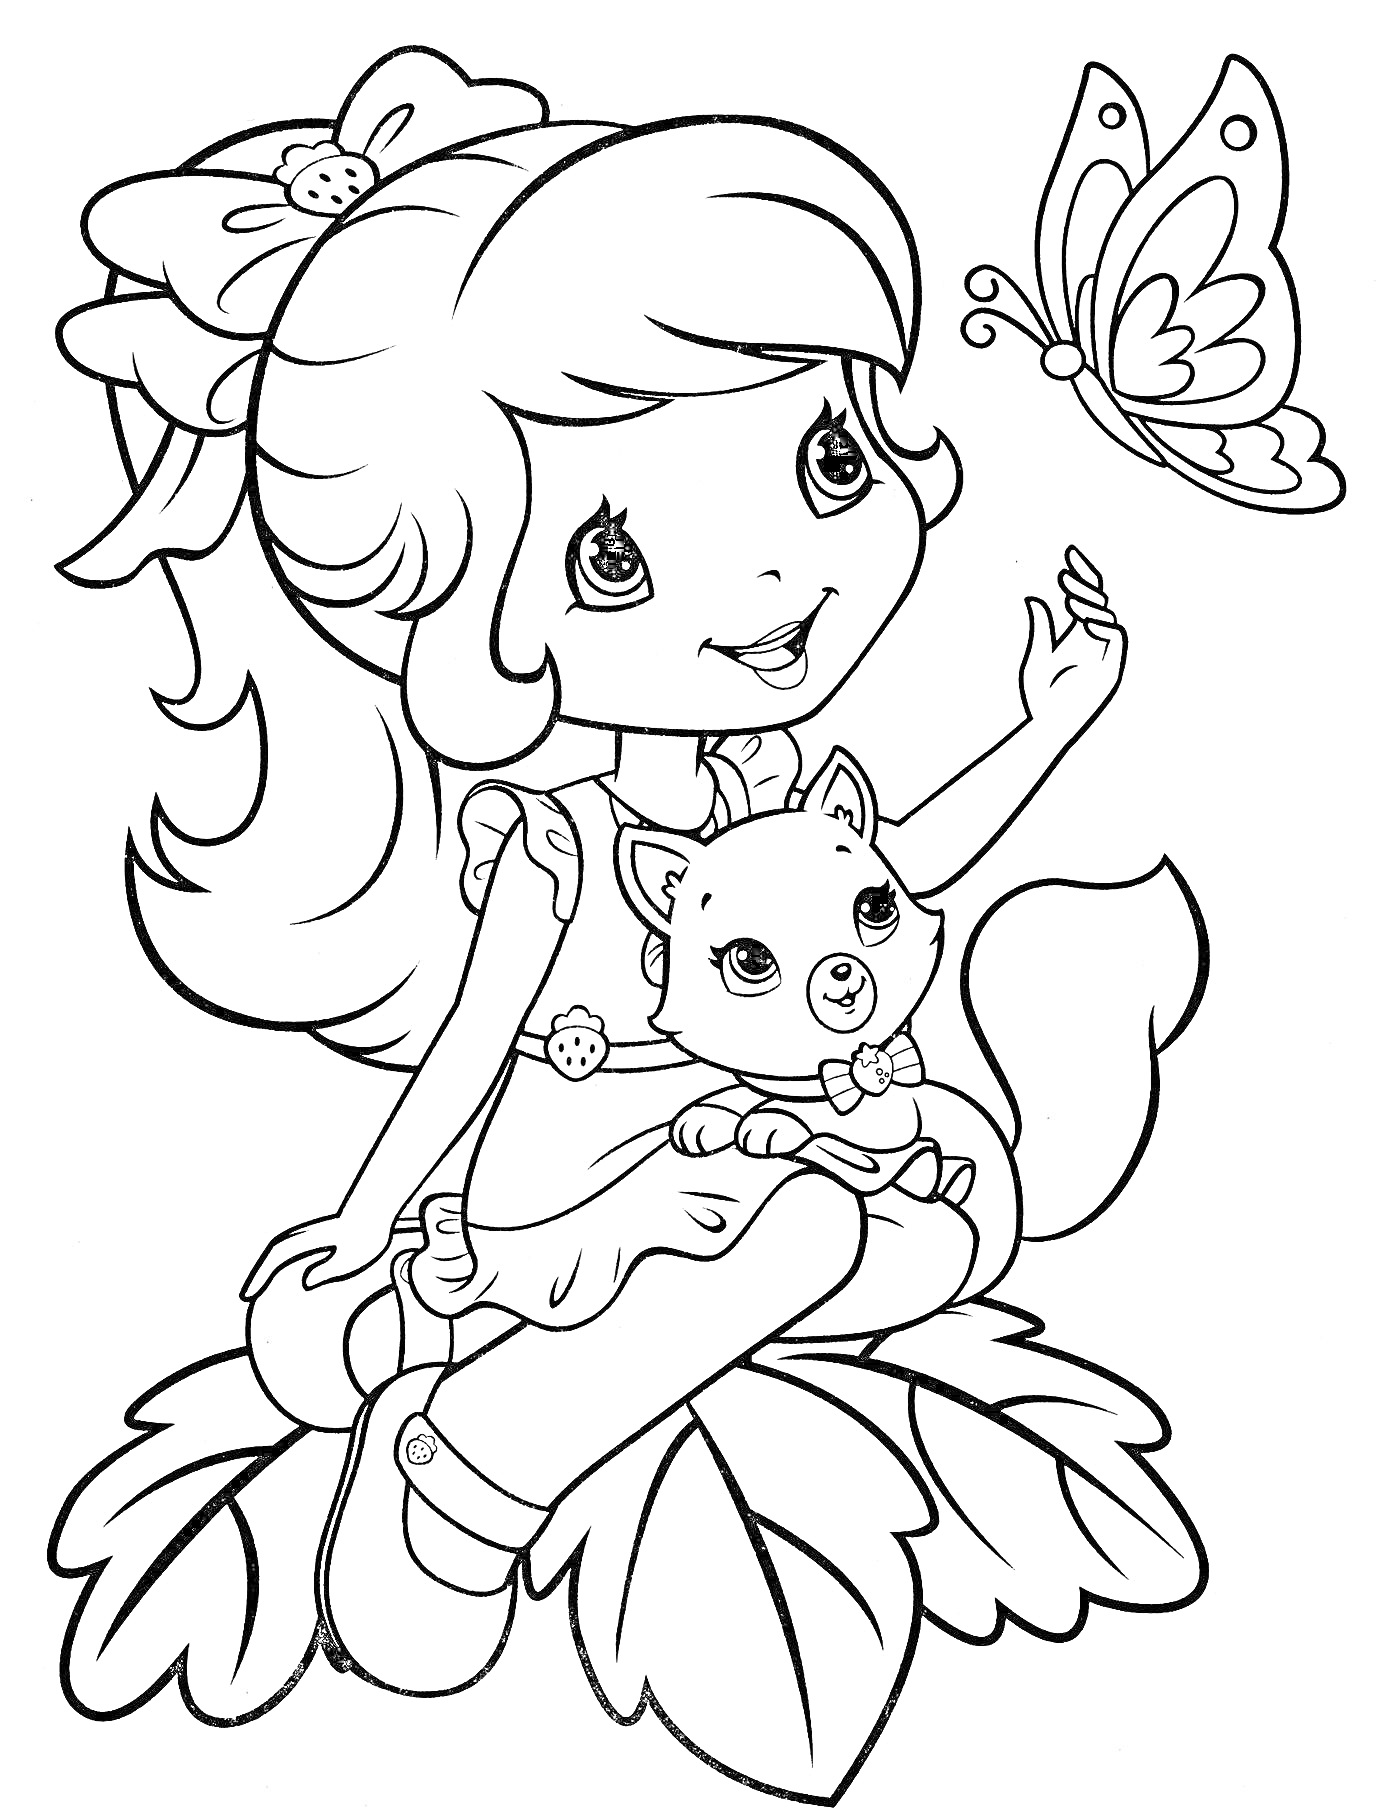 Раскраска Девочка с бантом в волосах, сидящая на листьях с щенком на коленях и бабочкой на руках